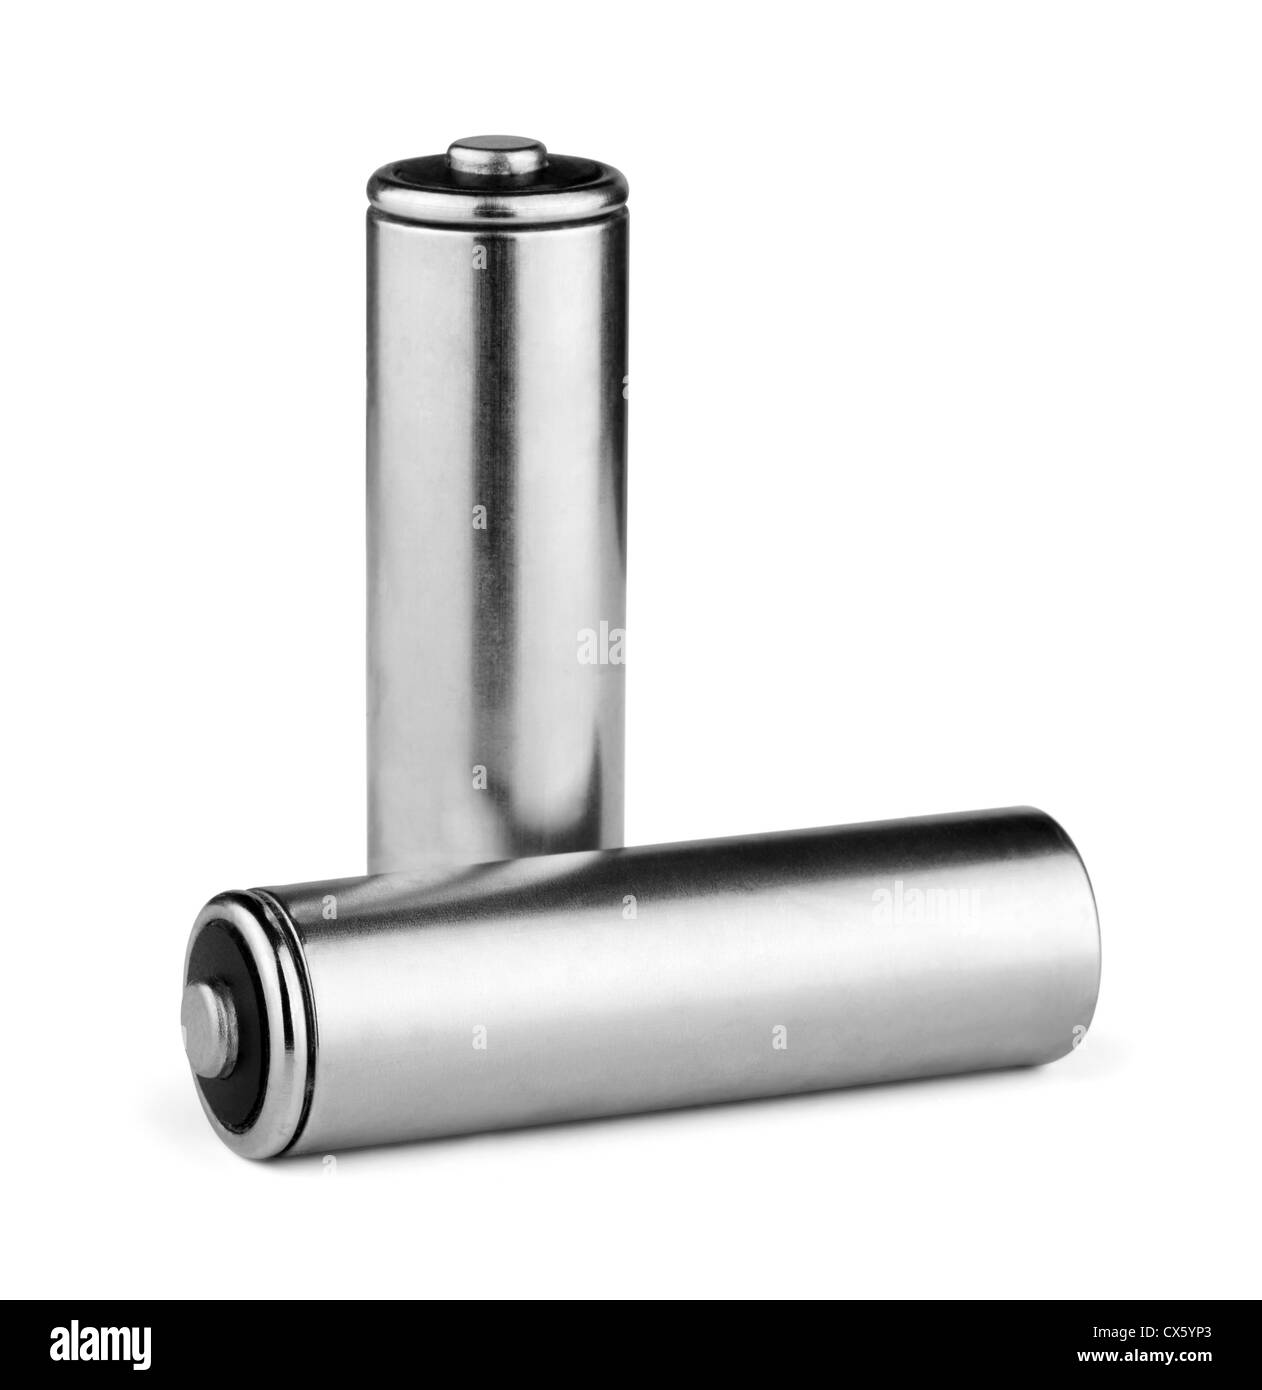 Dos baterías AA de plata aislado en blanco Foto de stock